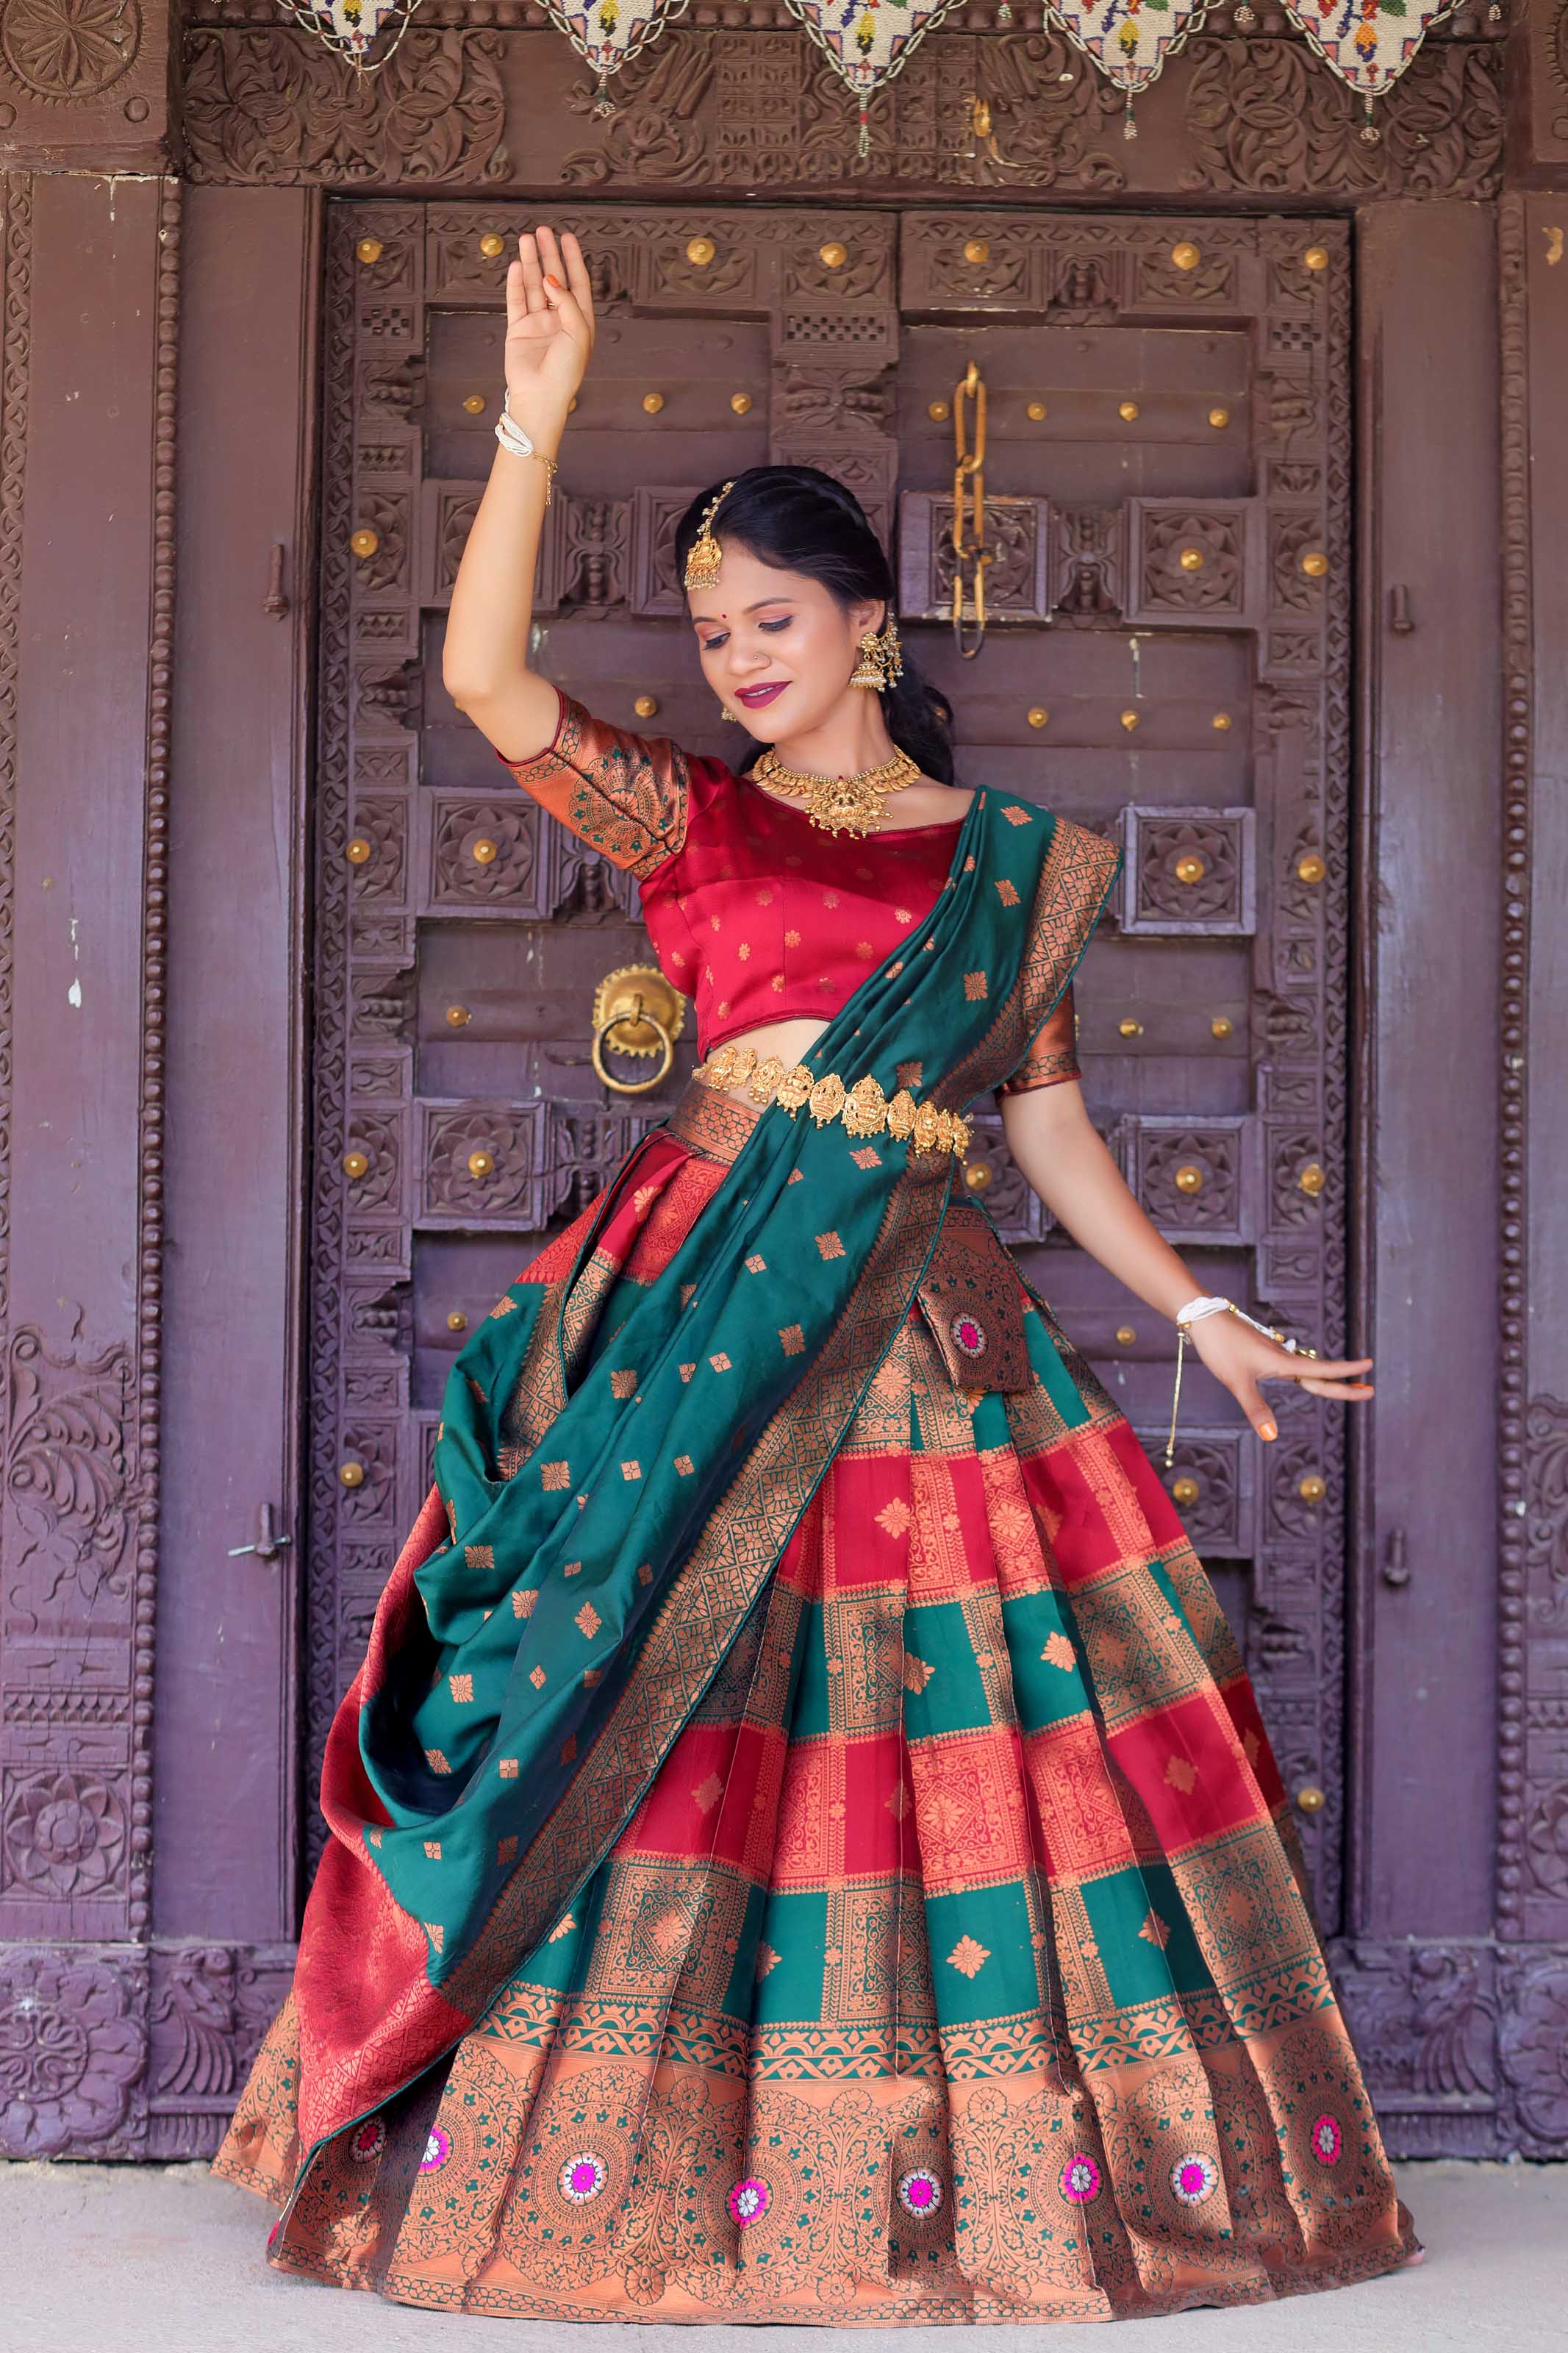 South Indian Celebrities Silk Sarees - Saree Blouse Patterns